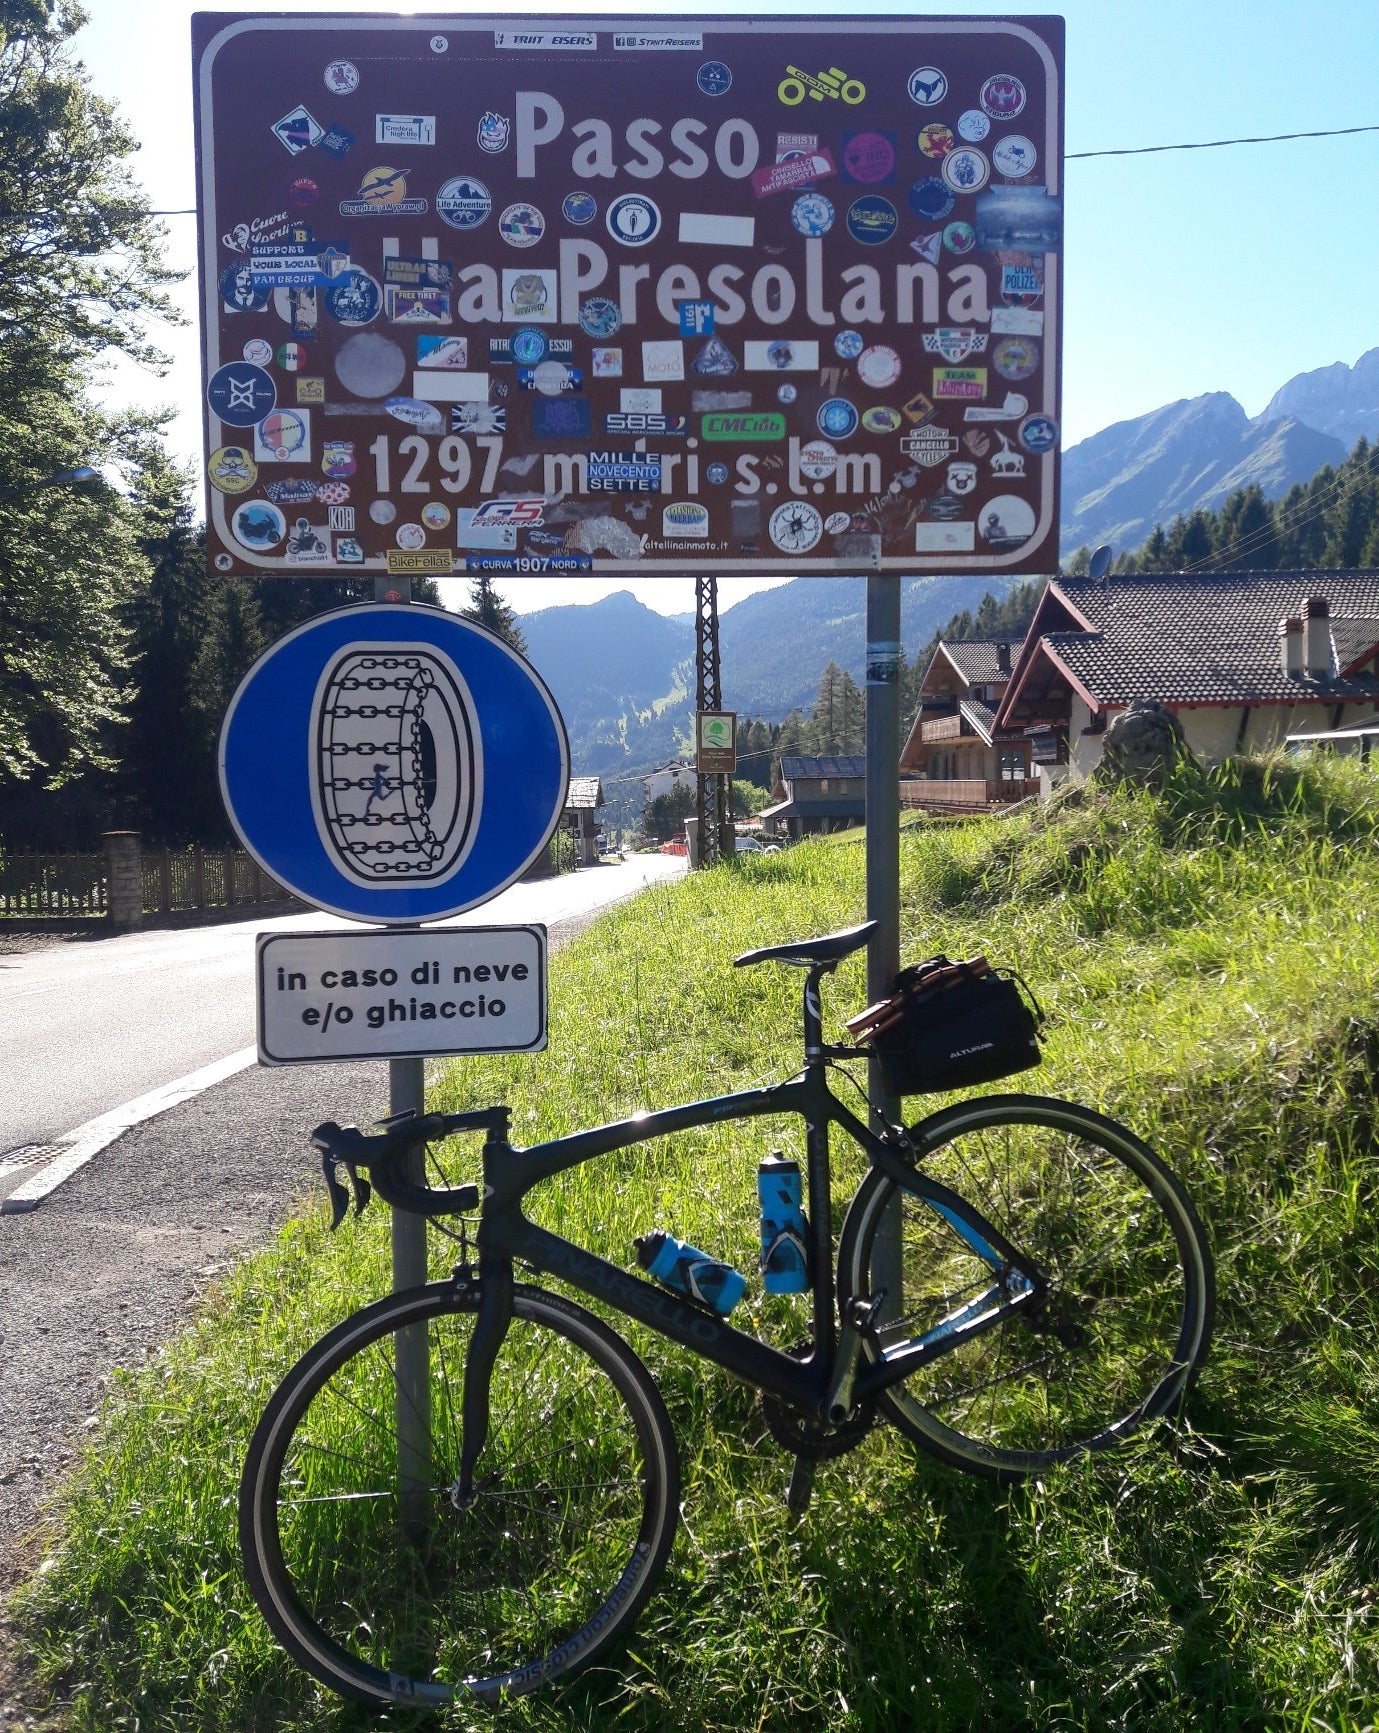 The Passo della Presolana. The final climb of the trip.